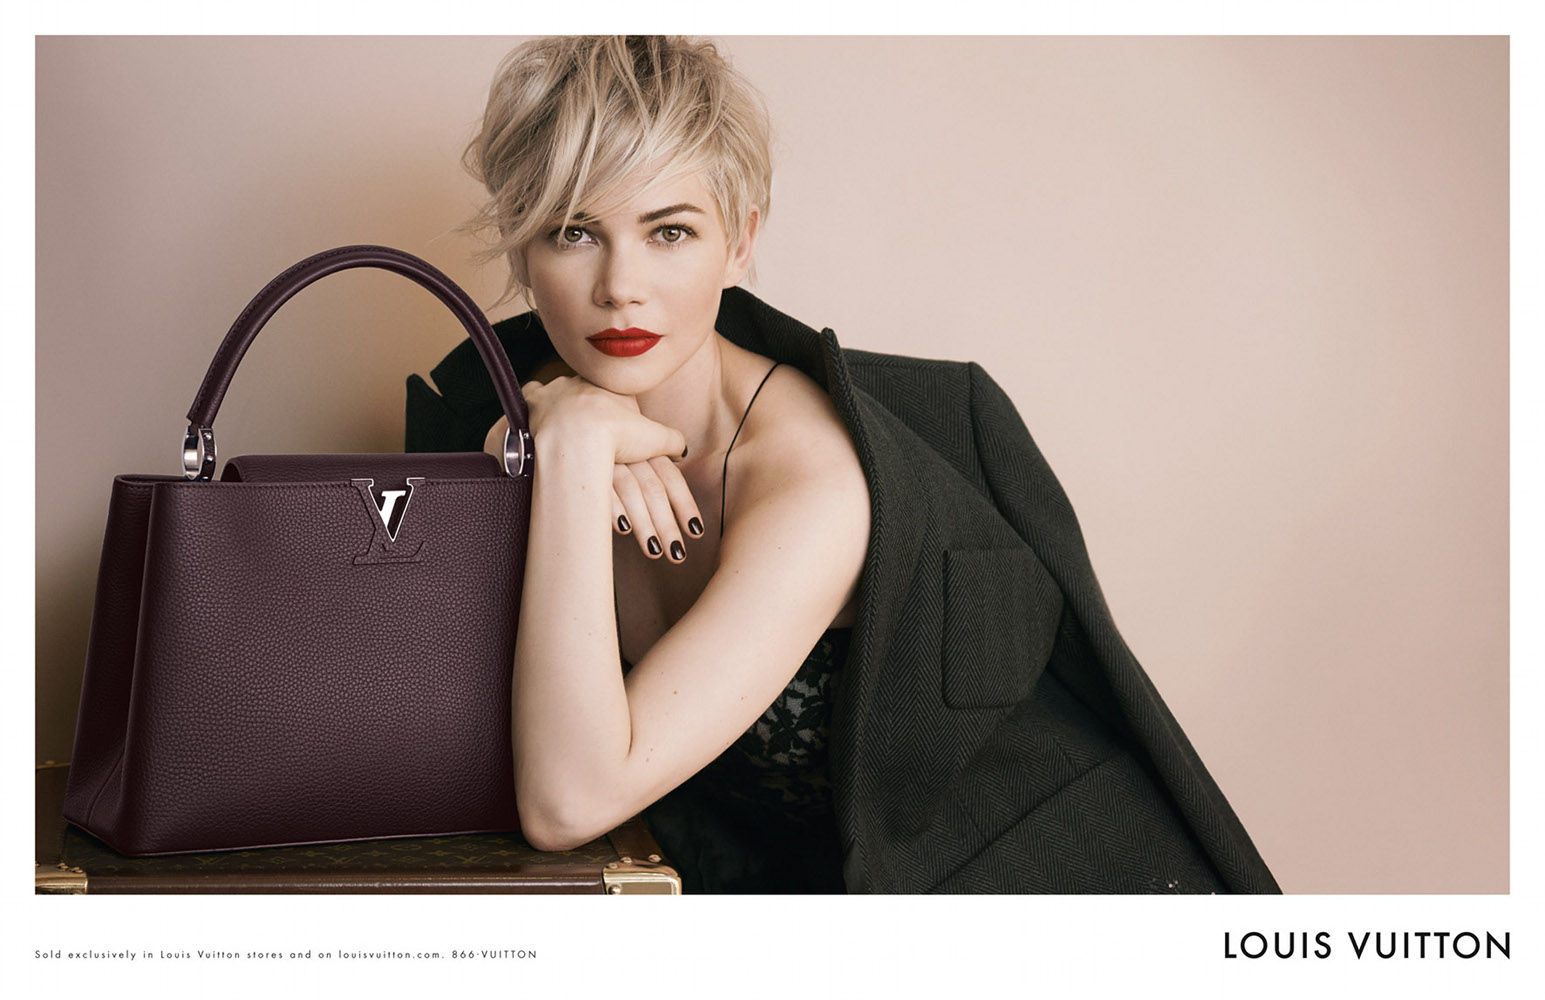 Louis Vuitton annonce une augmentation de ses prix